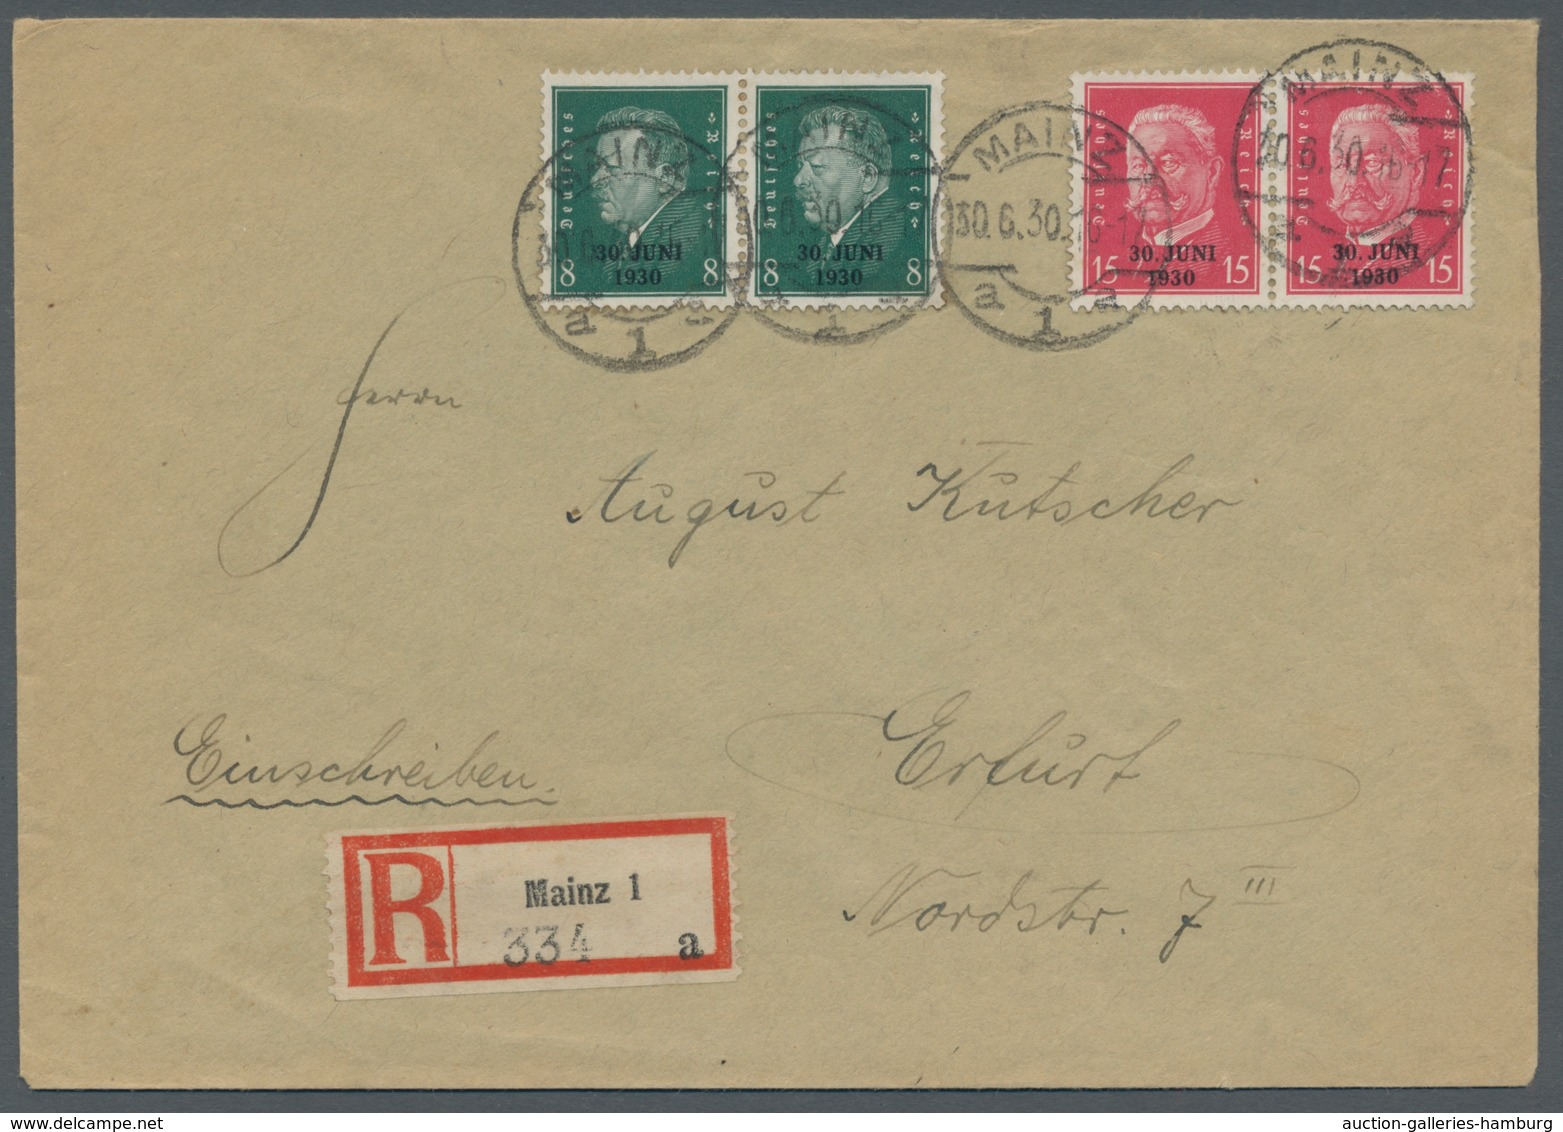 Deutsches Reich - Weimar: 1930, Rheinlandbefreiung, Satz Als Paare Frankiert, Kpl. Auf R-Brief Mit E - Unused Stamps